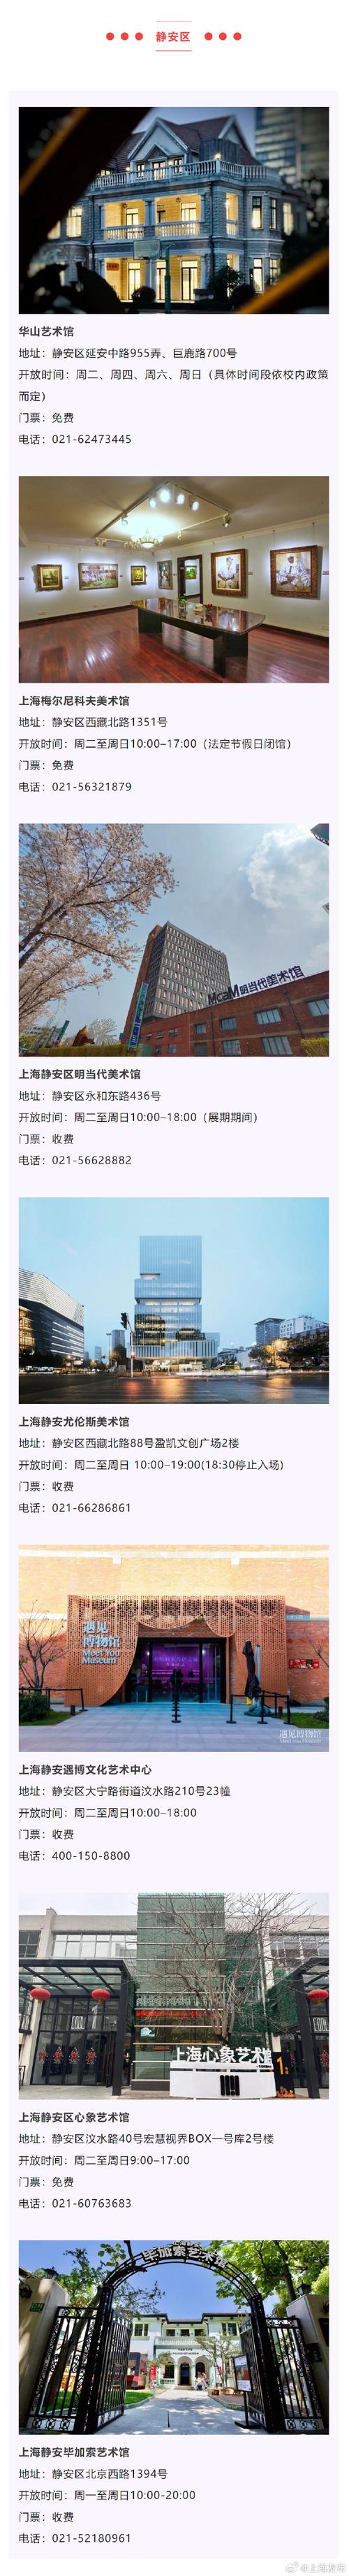 上海美术馆官方网站